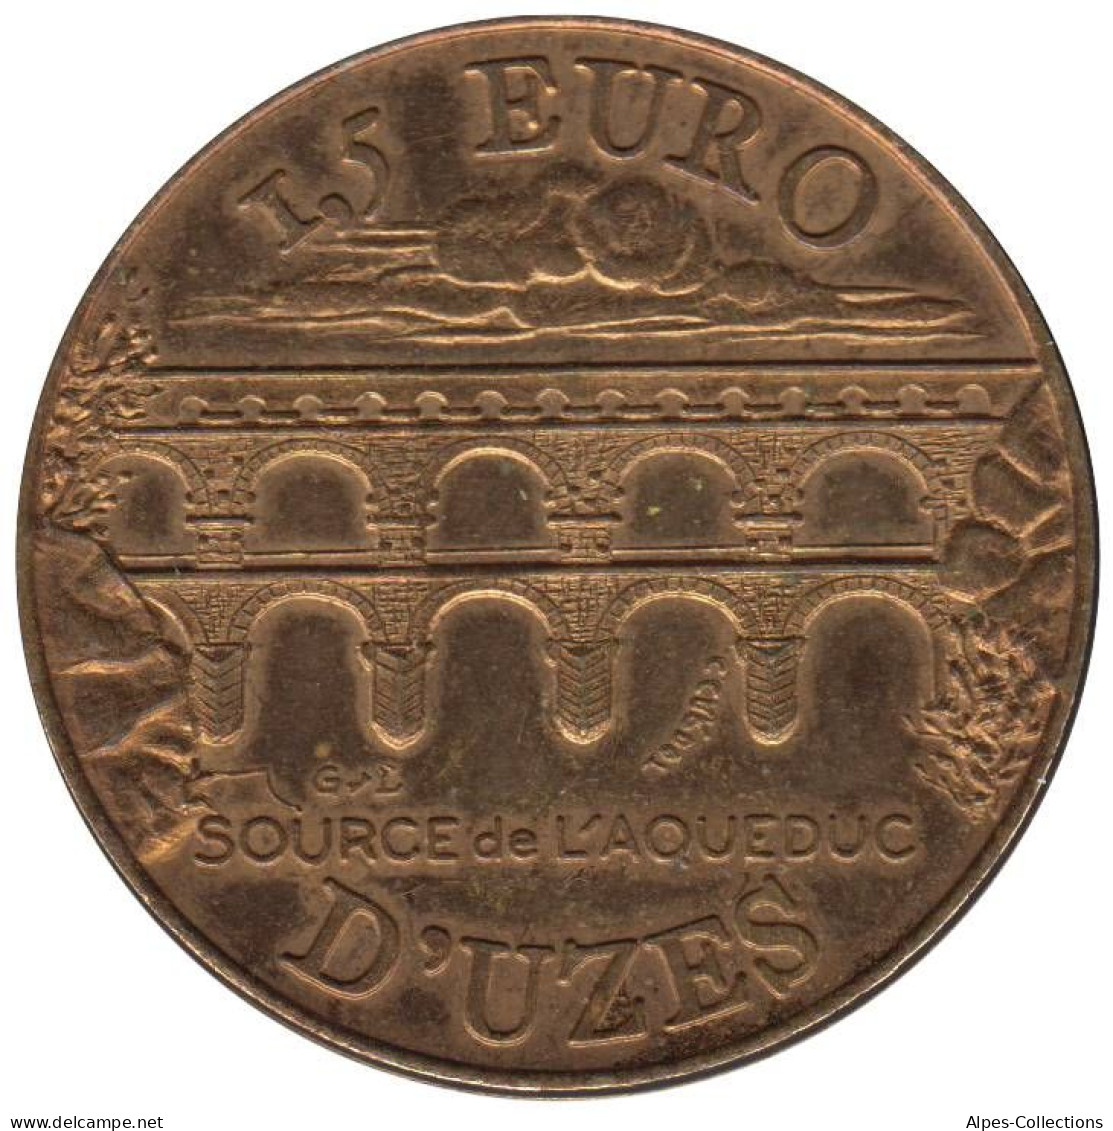 UZES - EU0015.1 - 1,5 EURO DES VILLES - Réf: NR - 1997 - Euro Van De Steden